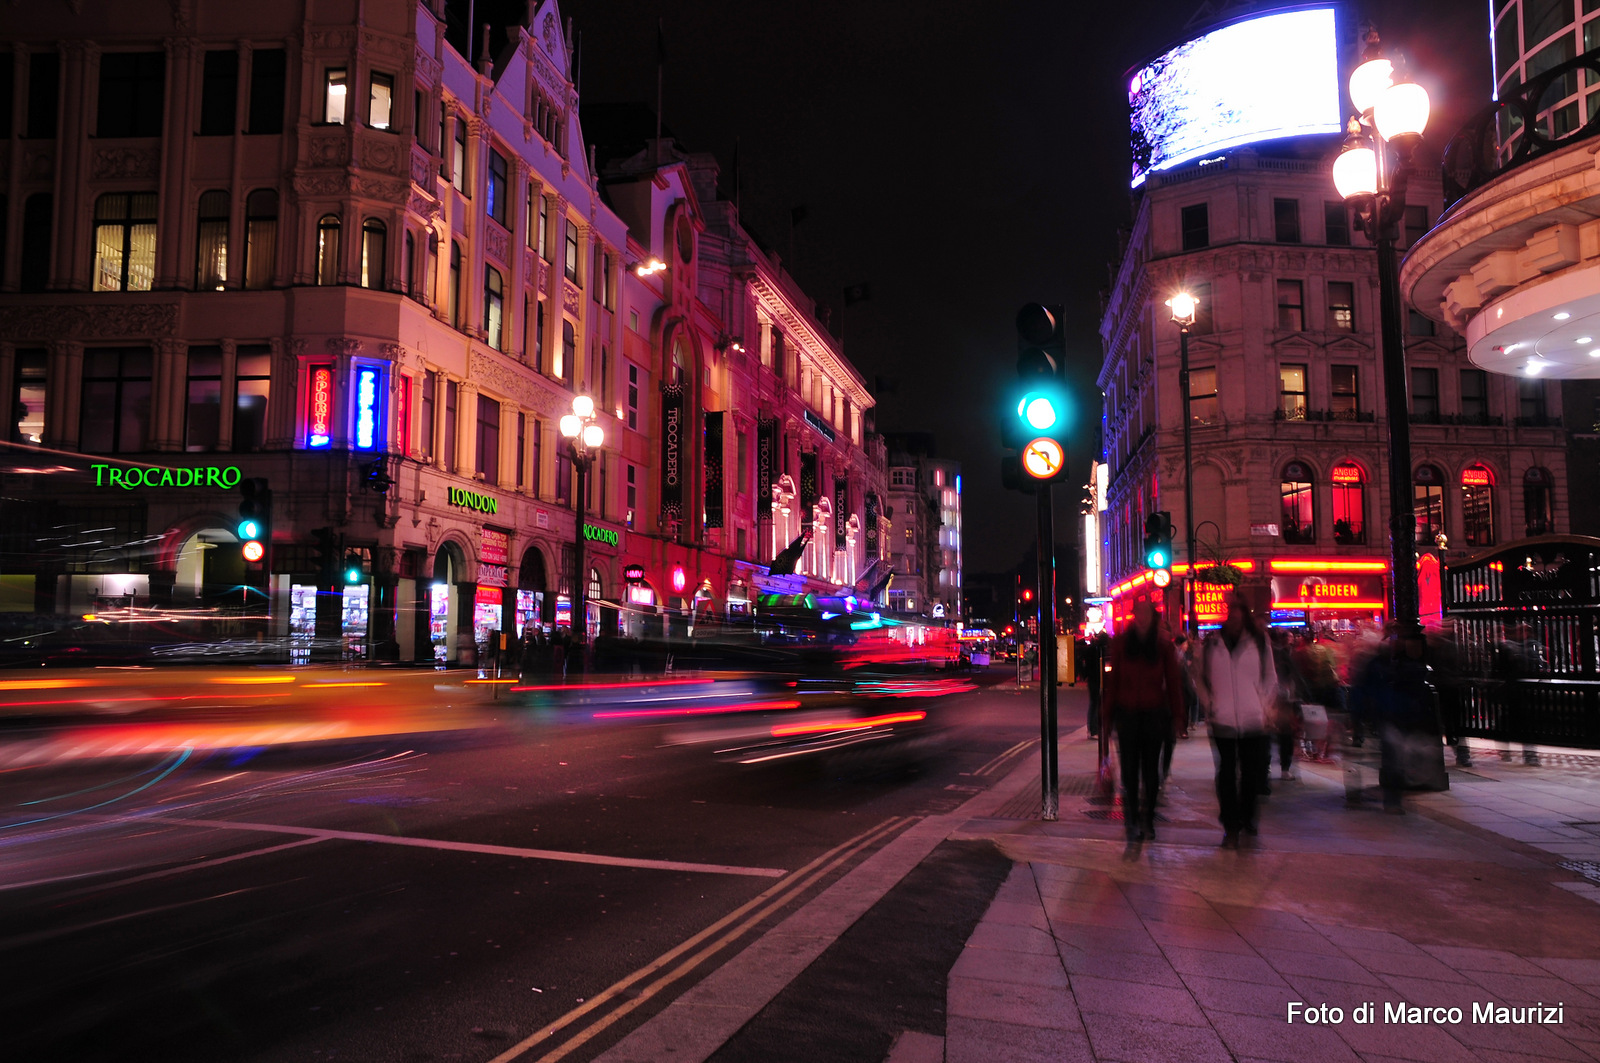 London at night...